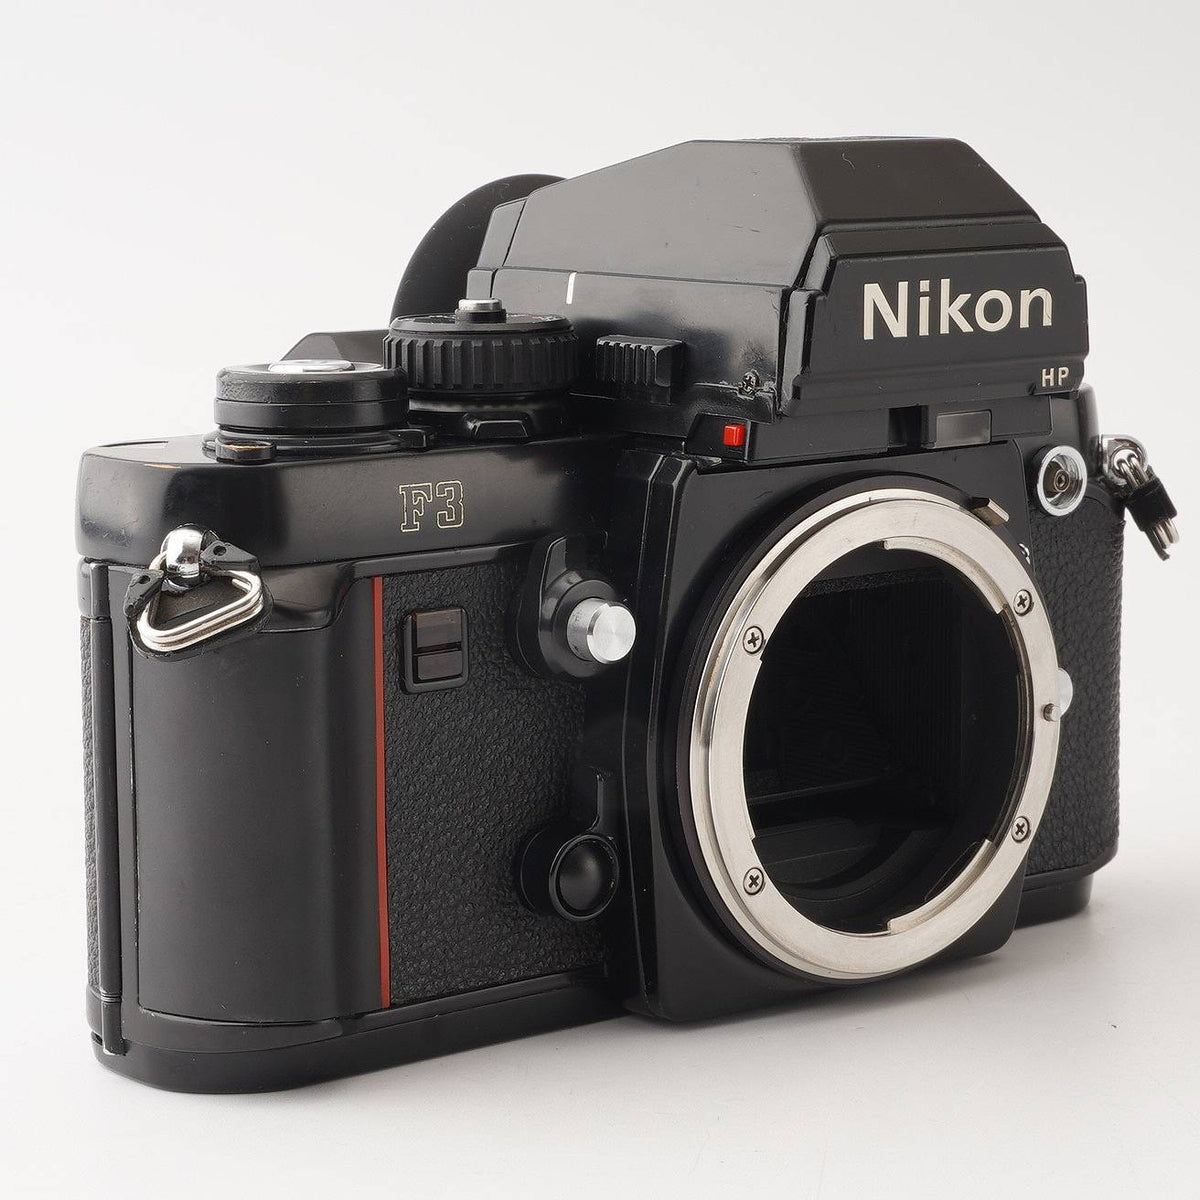 ニコン Nikon F3 HP / データバック MF-14 / モータードライブ